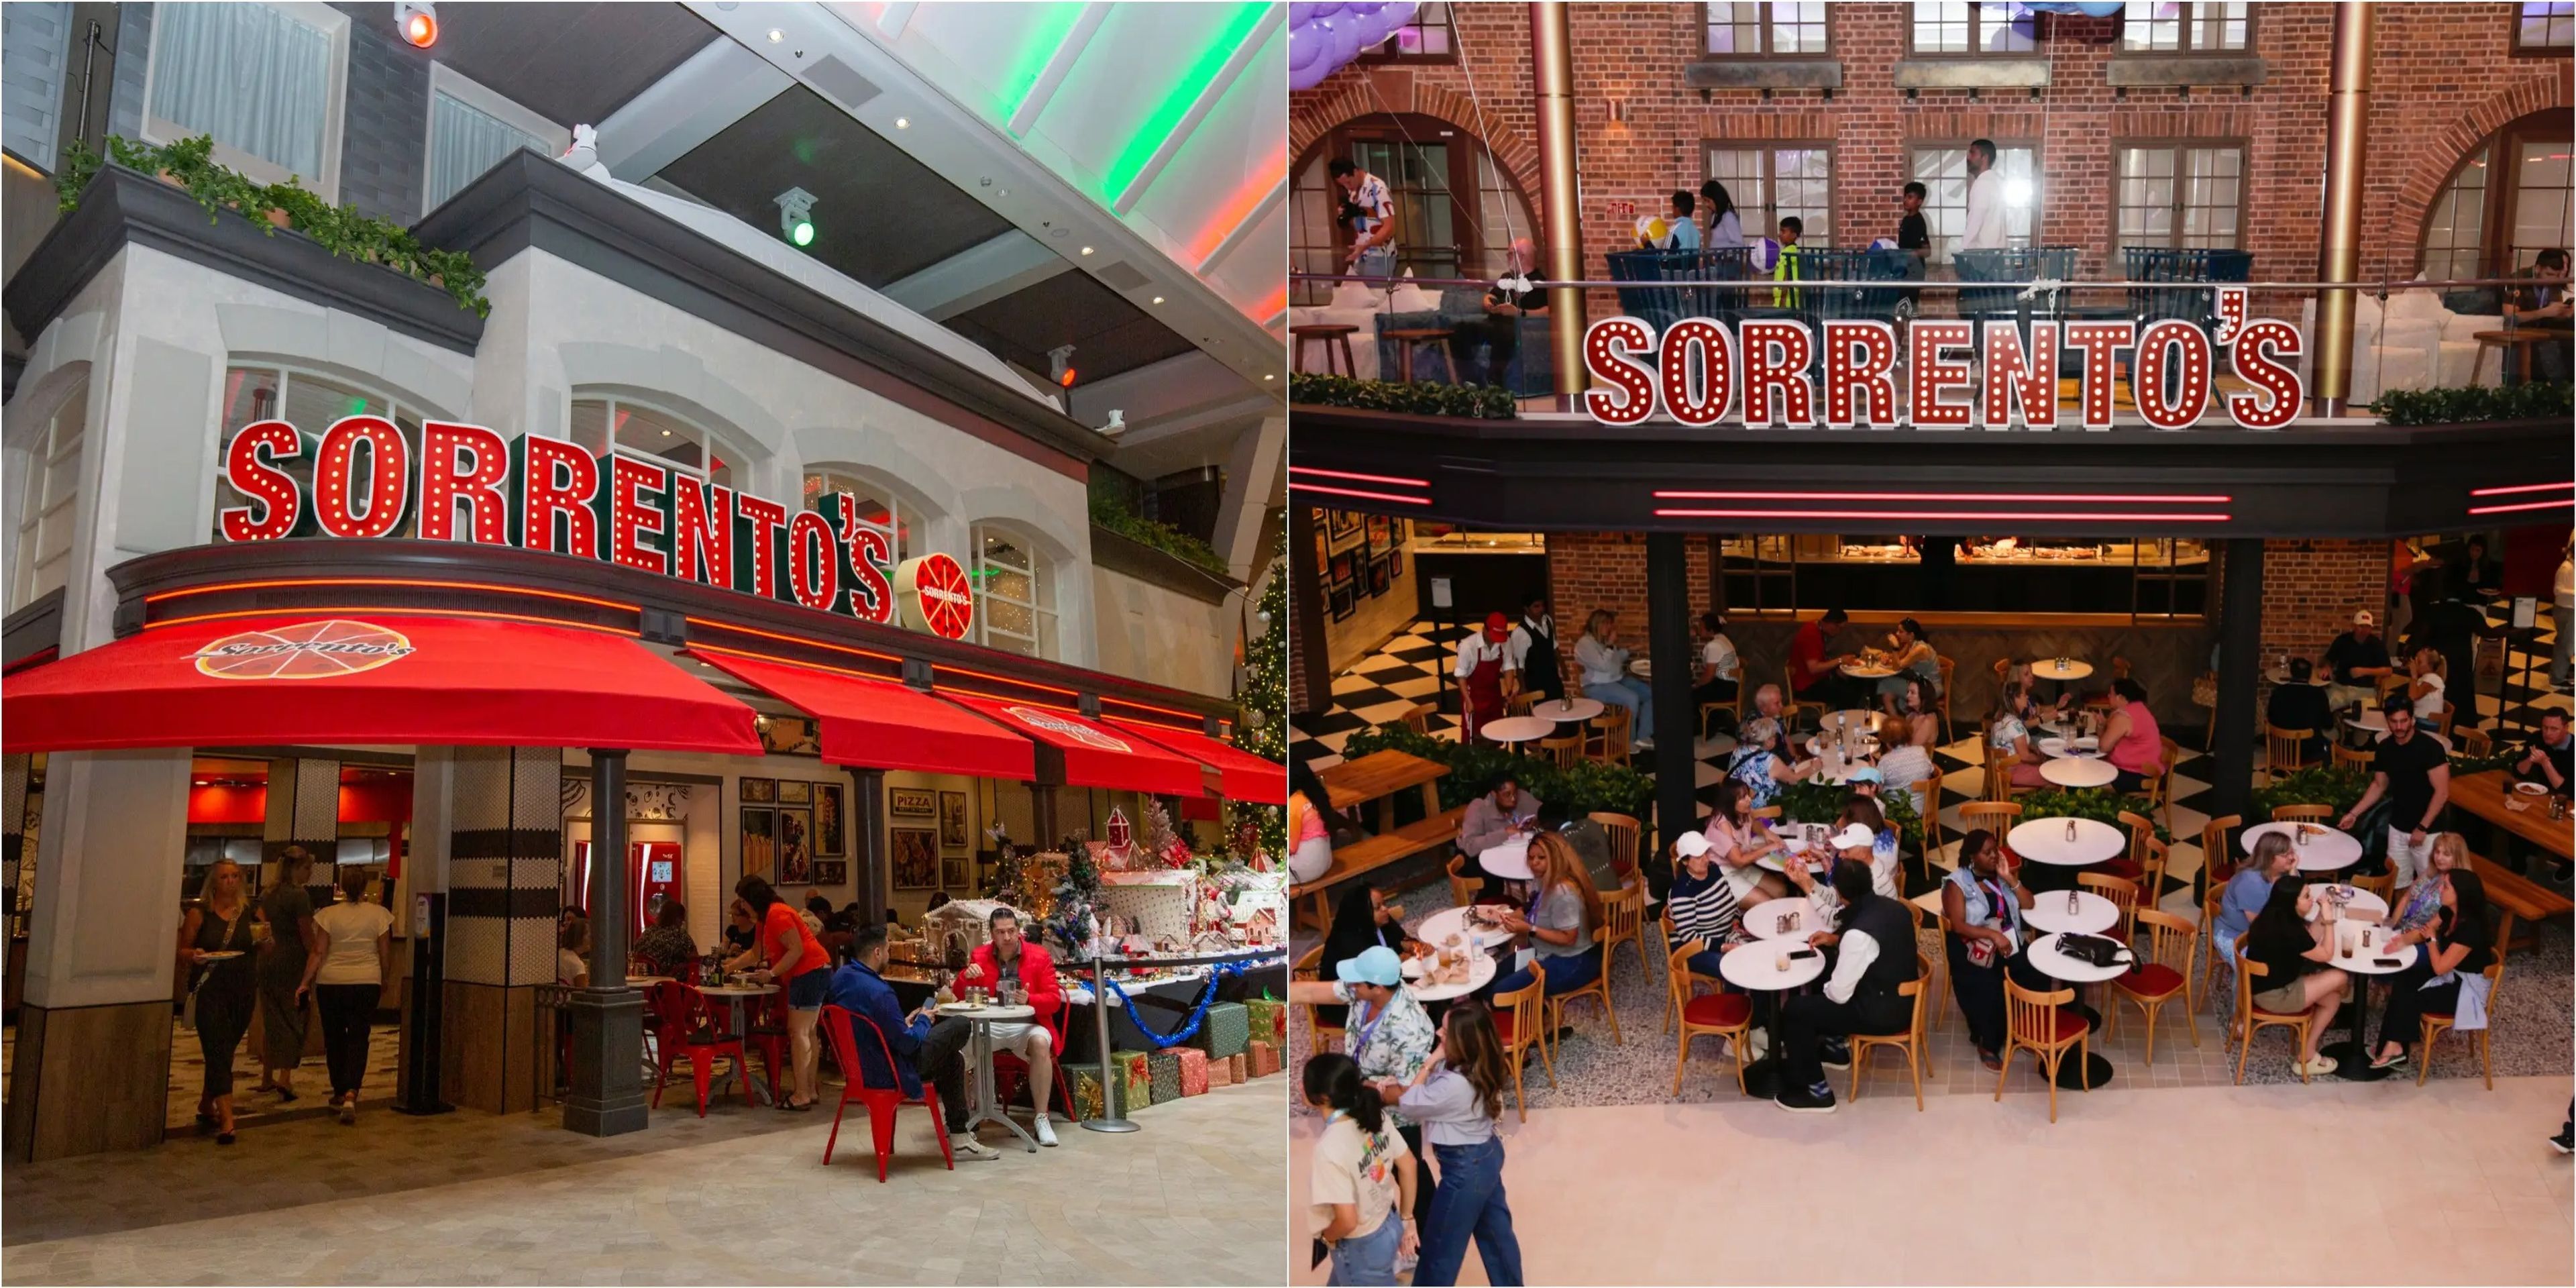 Wonder of the Seas (izquierda) e Icon of the Seas (derecha) disponen de Sorrento's, una pizzería gratuita para llevar.